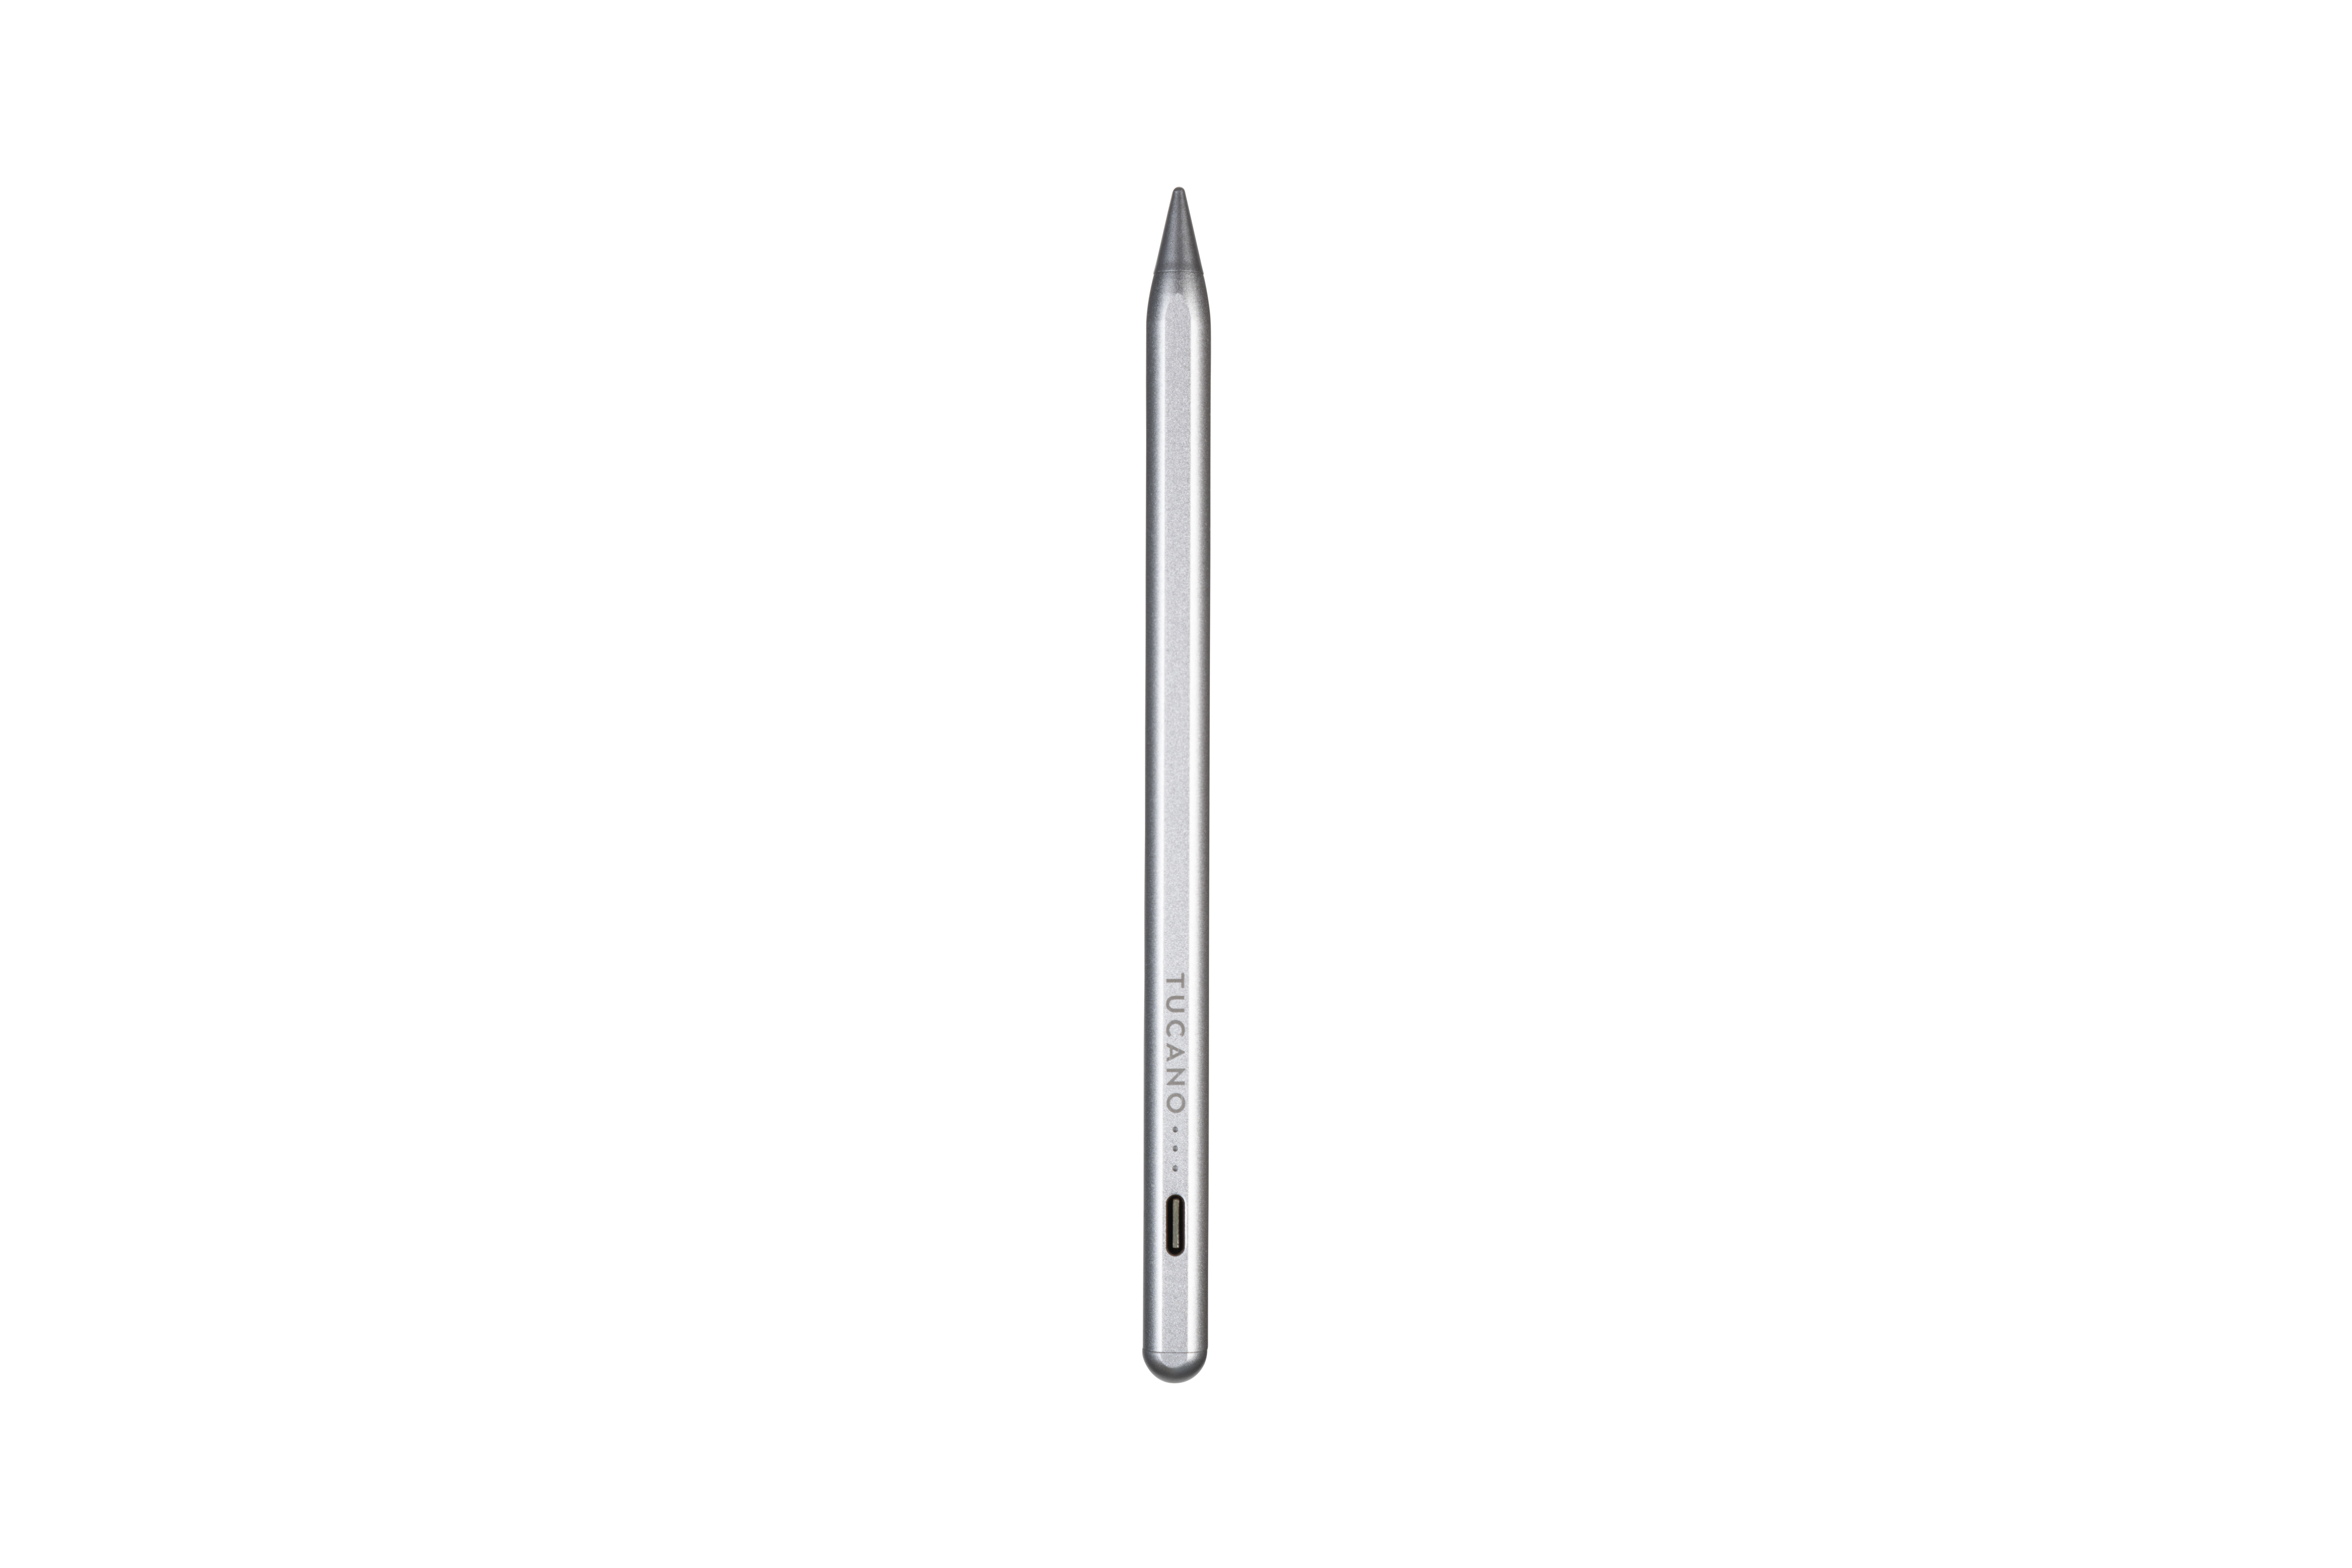 Tucano Pencil Active Digital Pen for iPad - Silver